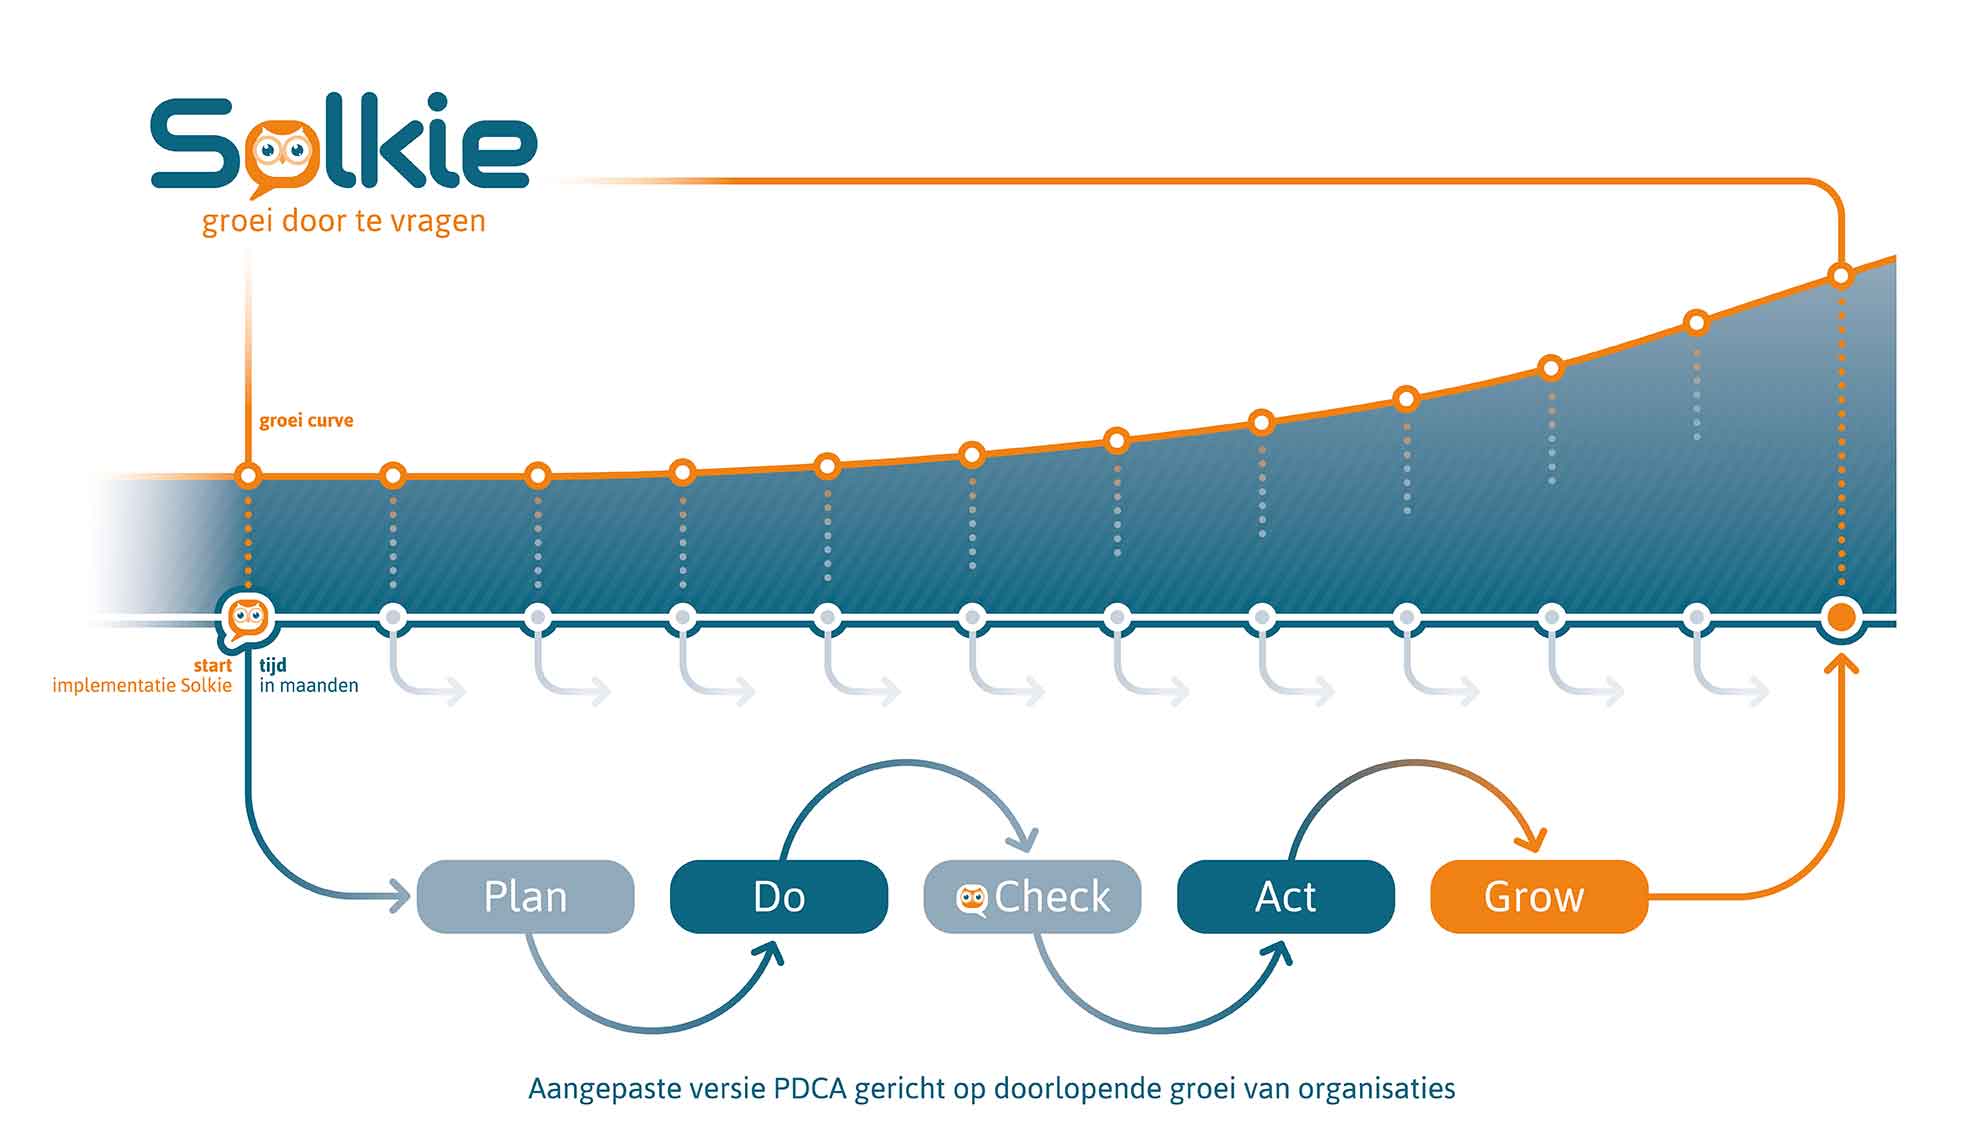 Solkie-Groei-door-te-vragen-PDCAG-Model-NL